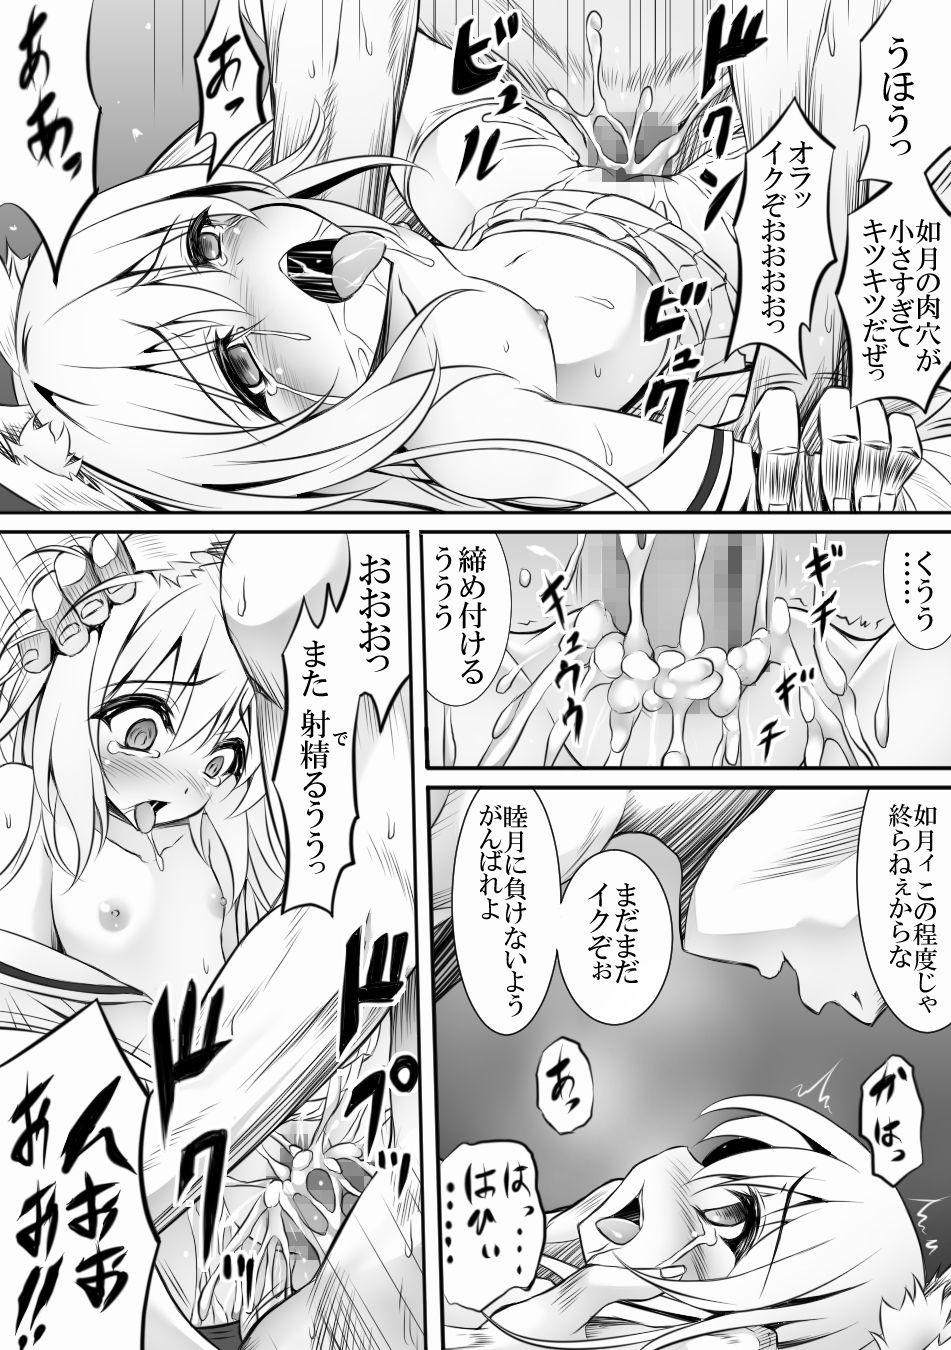 Prostituta AzuLan 1 Page Manga - Azur lane Step - Picture 1